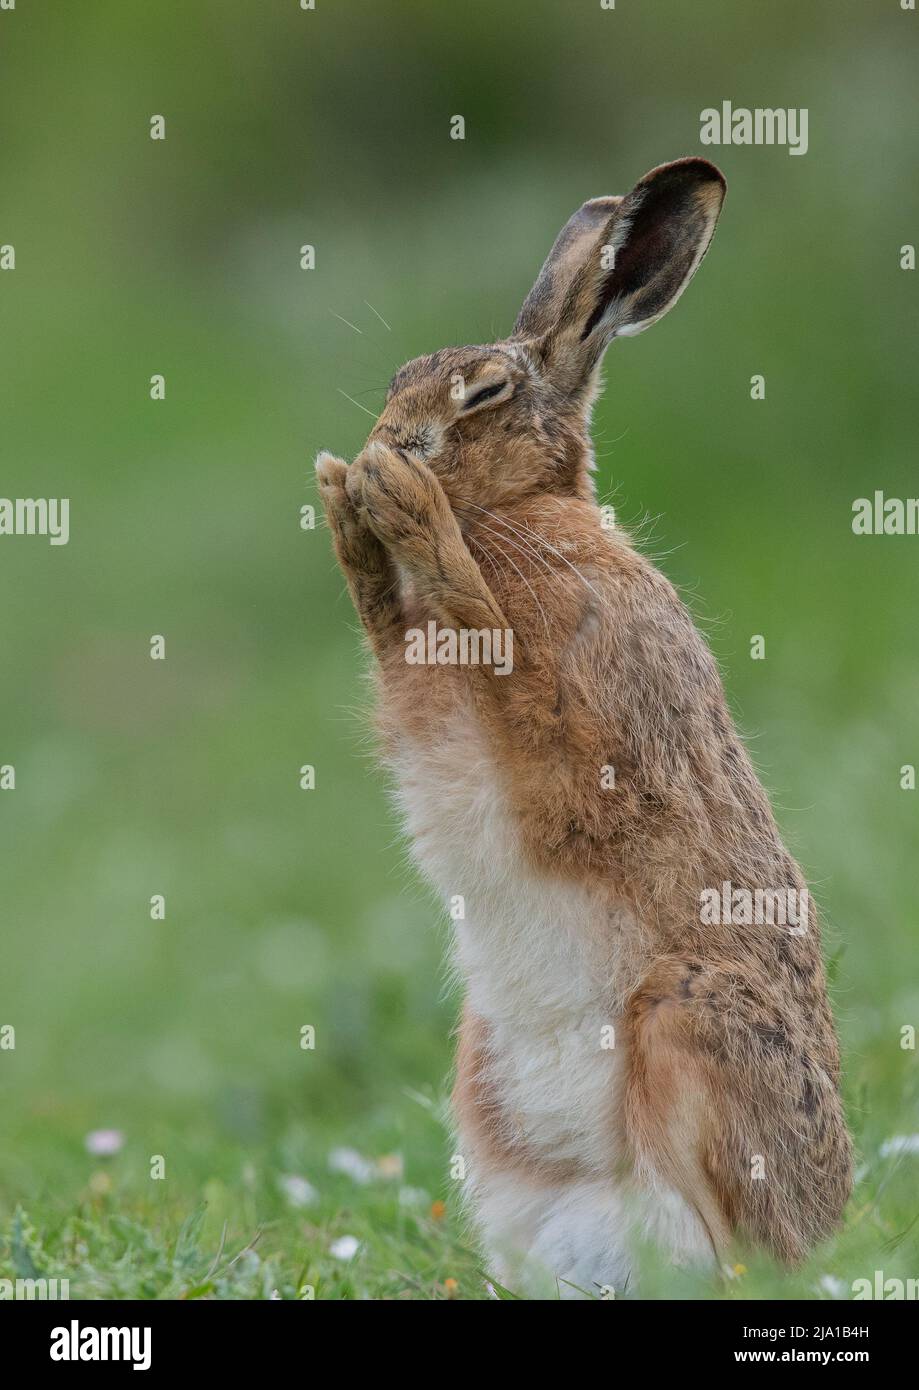 Ein brauner Hase, der aufsteht und seinen weißen Bauch zeigt, macht mit seinen Pfoten zusammen einen Wunsch. Eine niedliche Aufnahme eines schüchternen wilden Tieres. Suffolk, Großbritannien Stockfoto